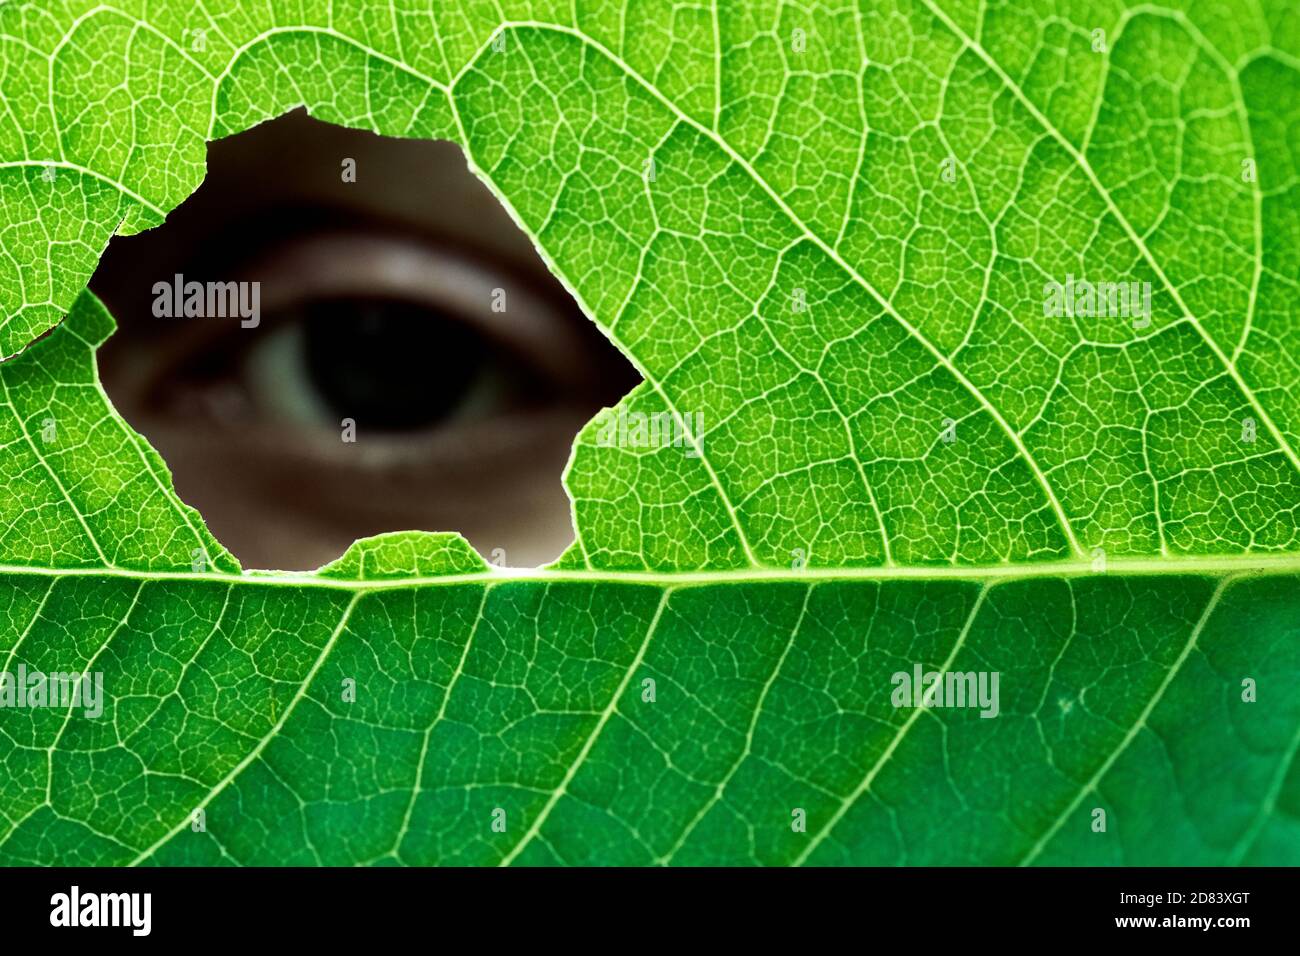 Occhio umano di una persona femminile che guarda attraverso la fotocamera foro in una foglia verde Foto Stock